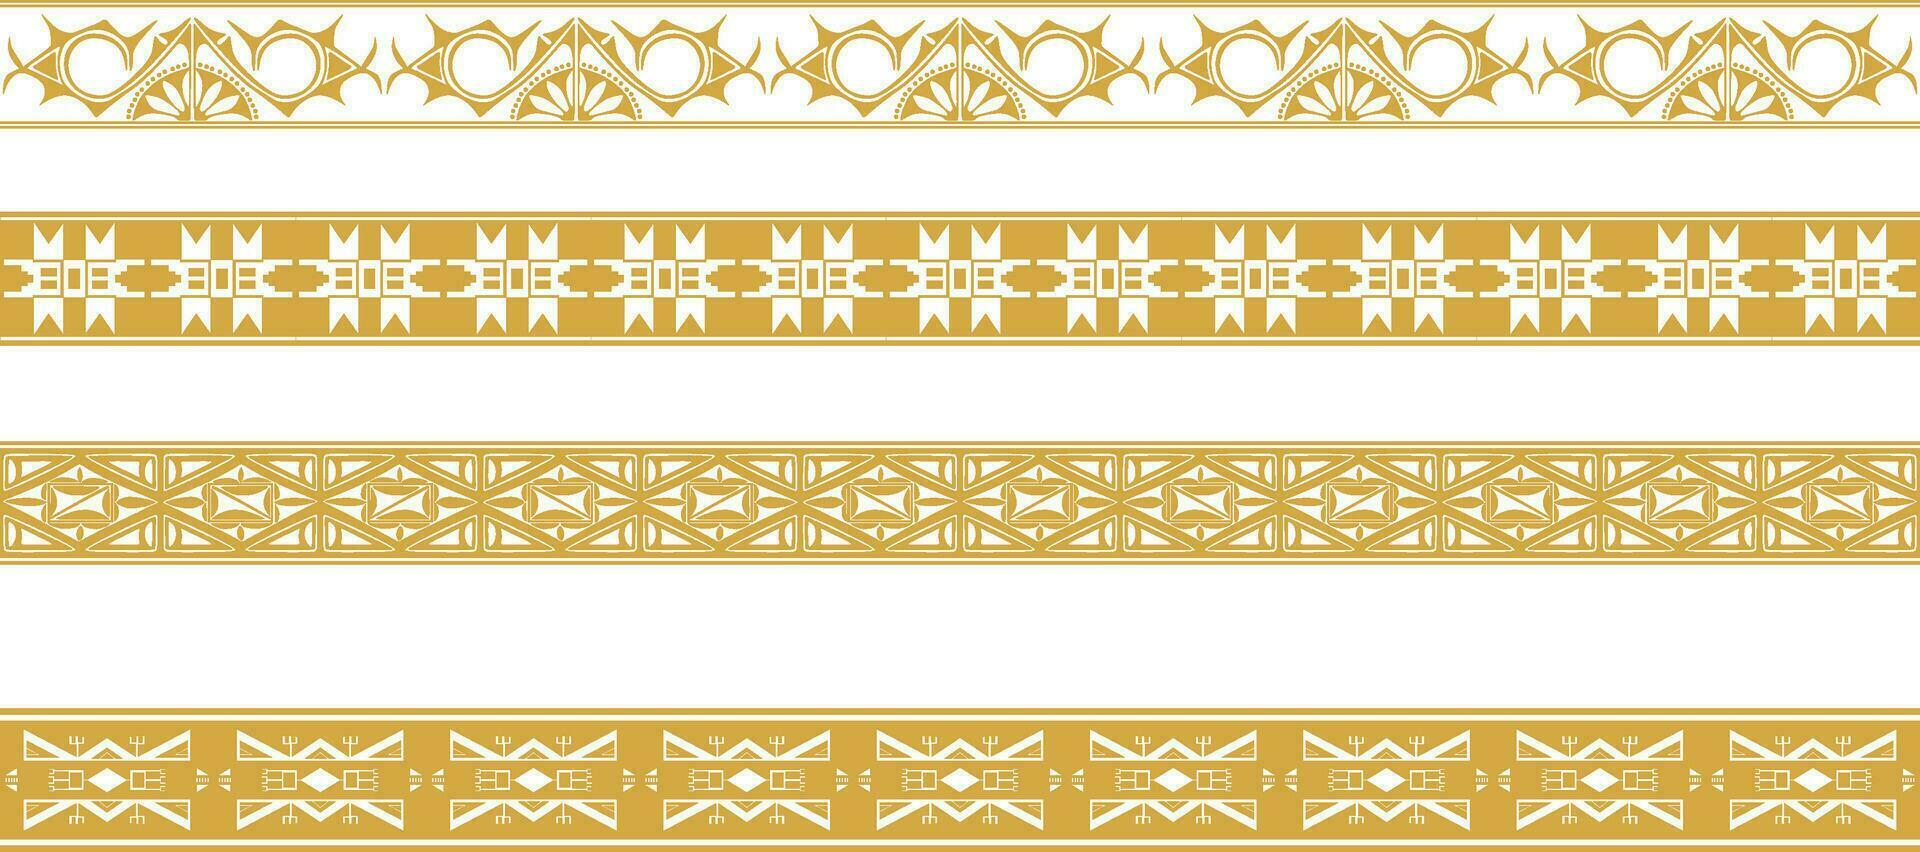 vetor conjunto do dourado nativo americano ornamental desatado fronteiras. estrutura do a povos do América, astecas, maia, incas